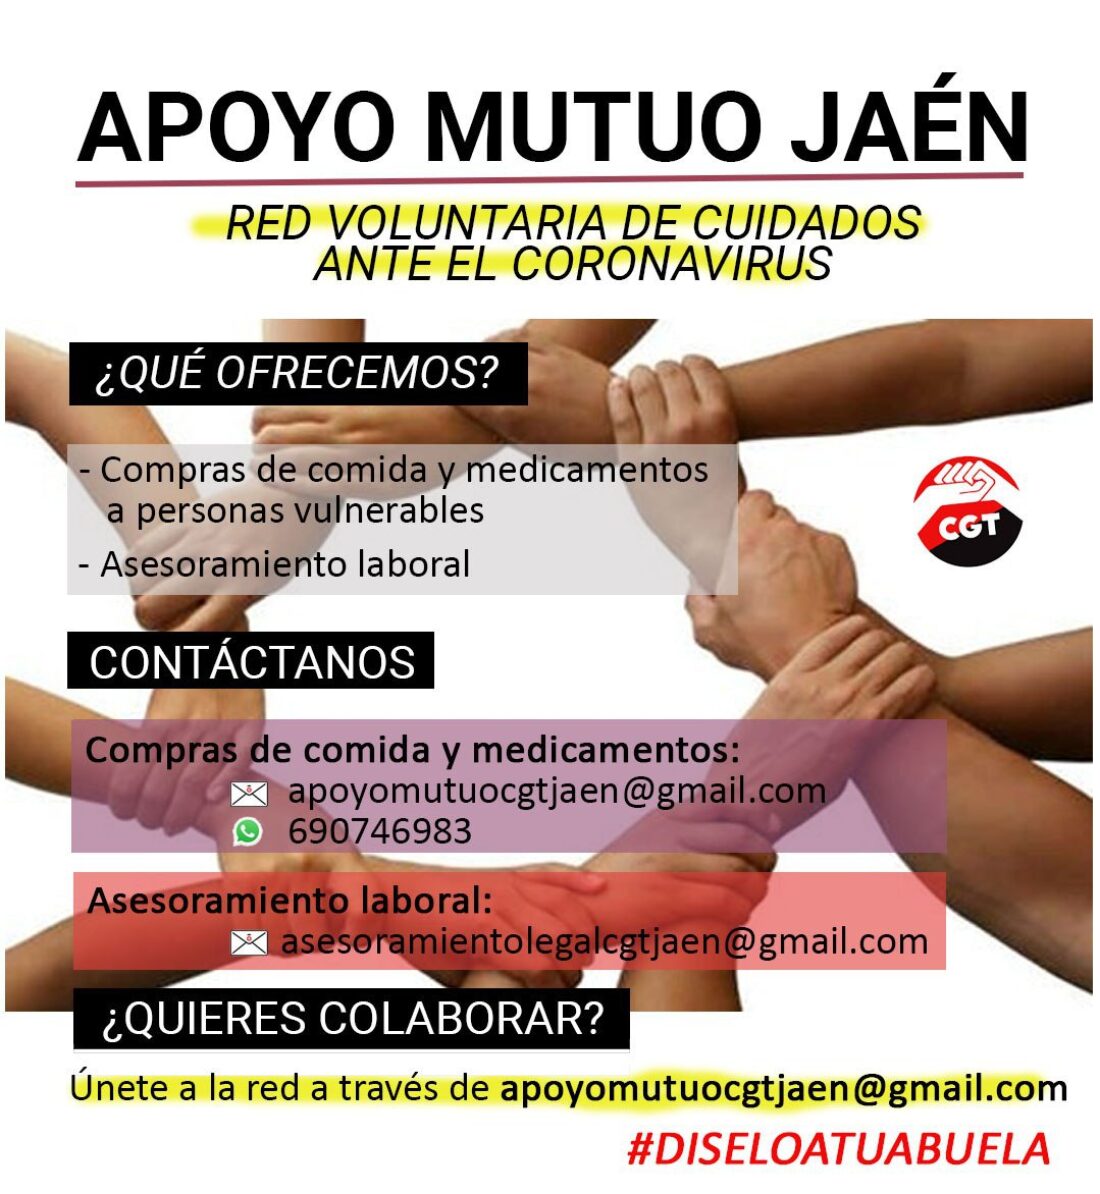 CGT Jaén lanza la red voluntaria de cuidados ante la crisis causada por el coronavirus, “Apoyo Mutuo Jaén”